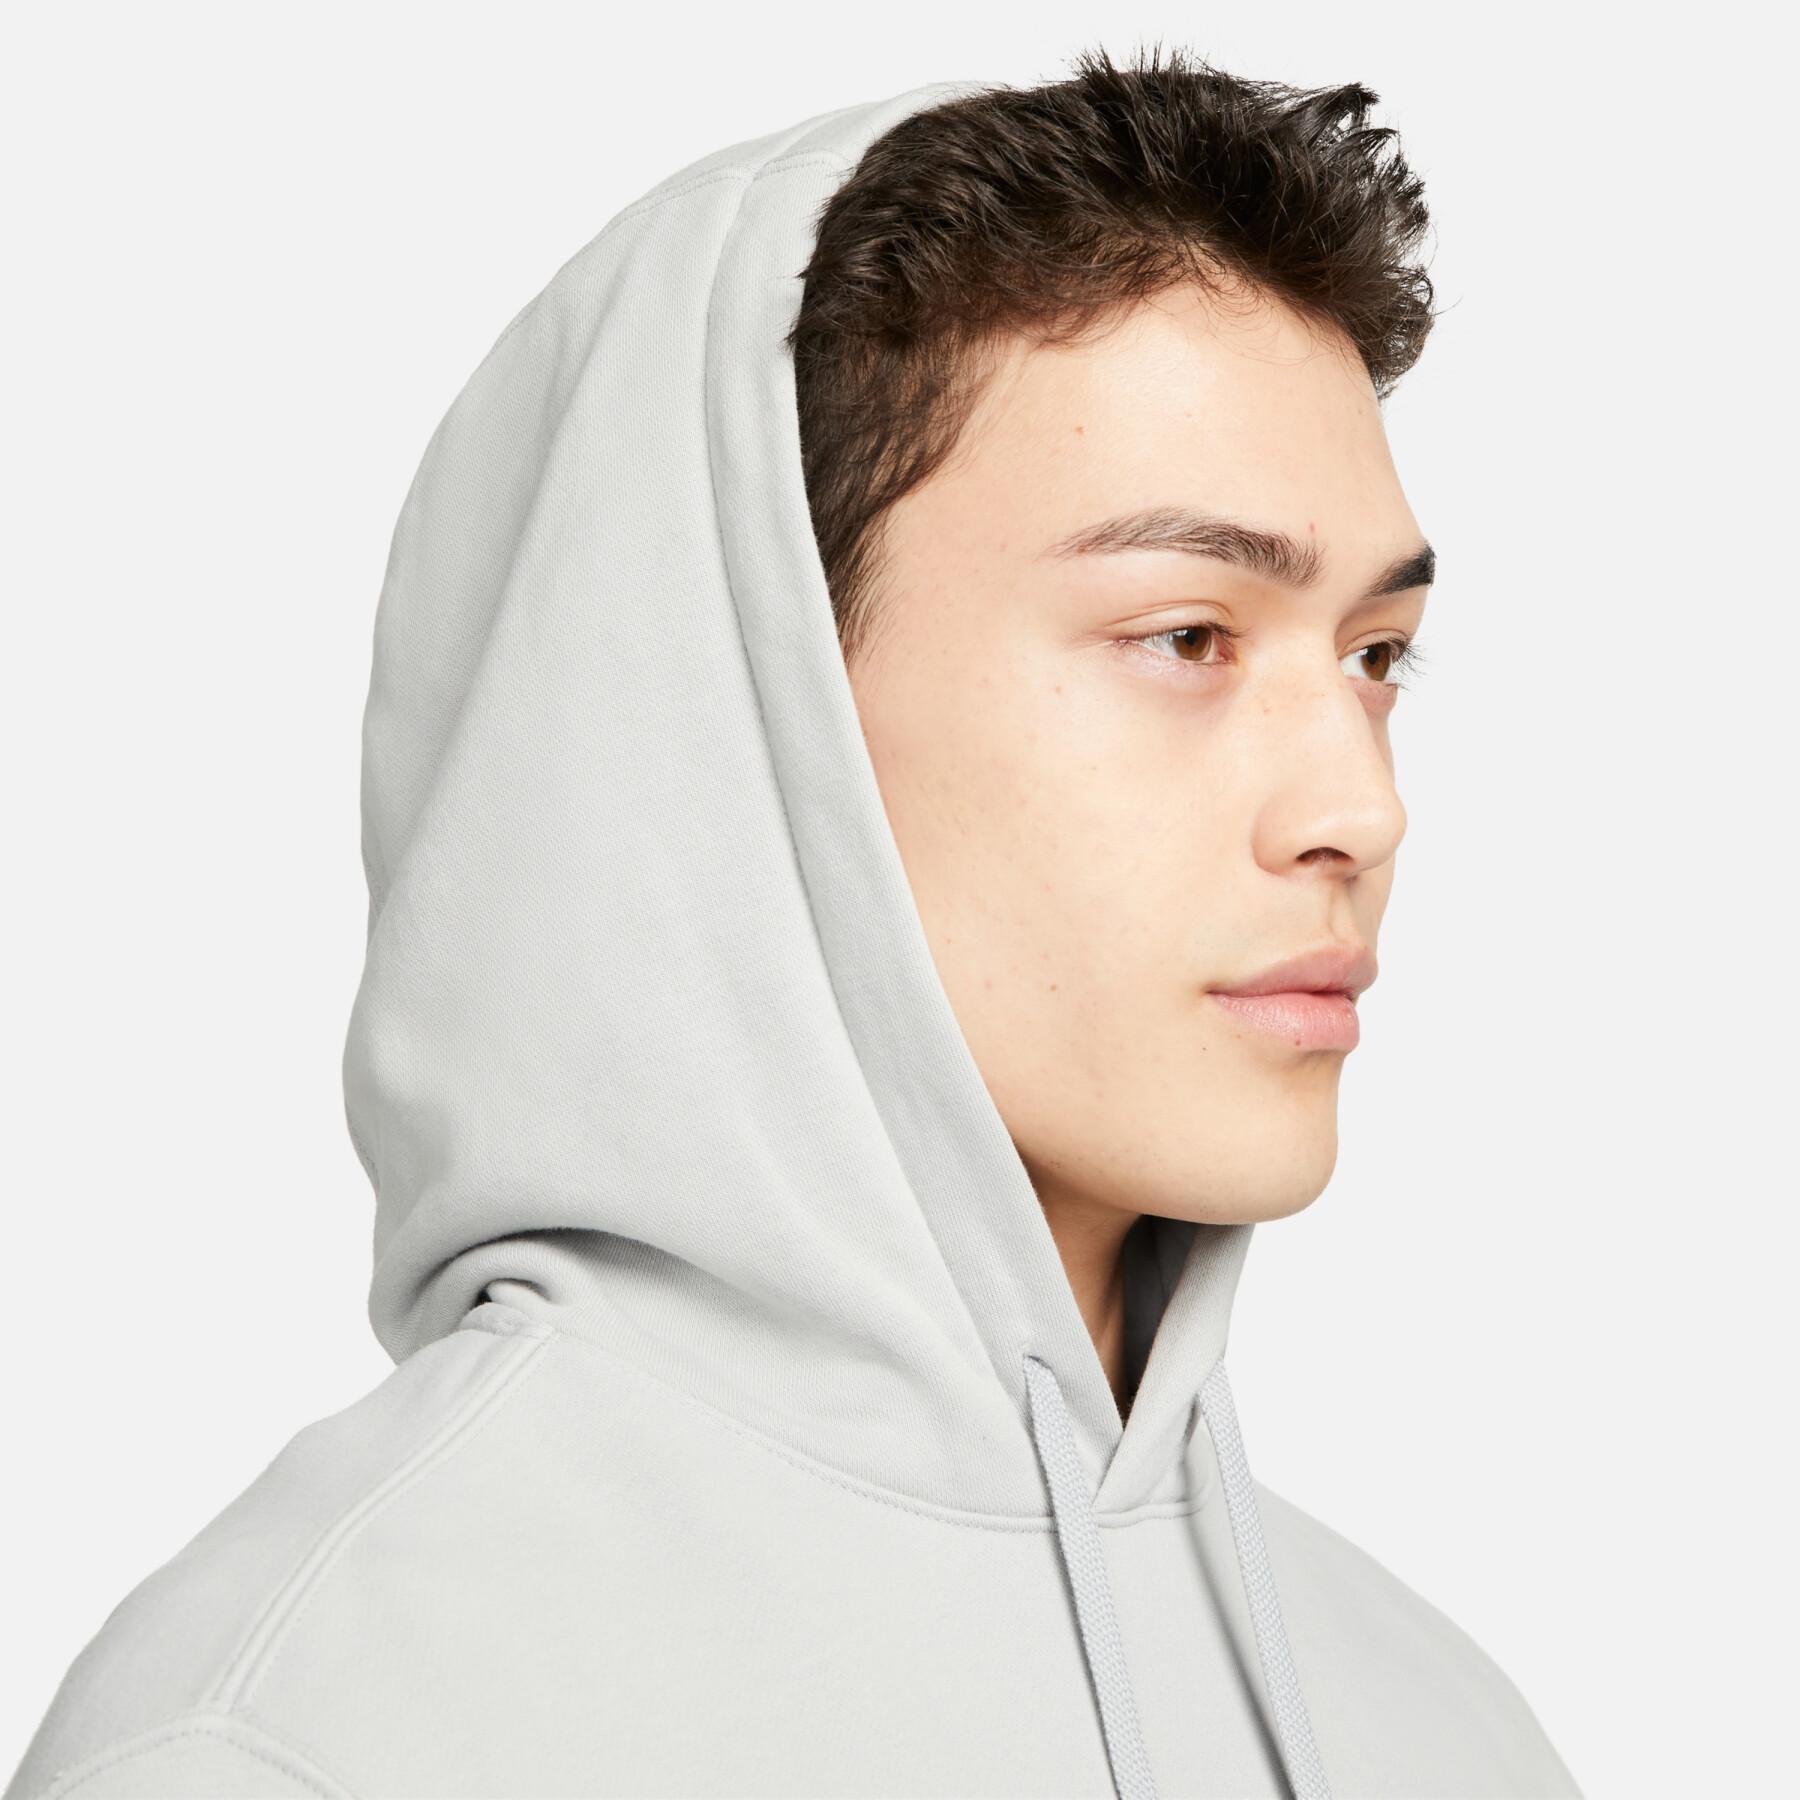 Hooded sweatshirt Nike Club Fleece+